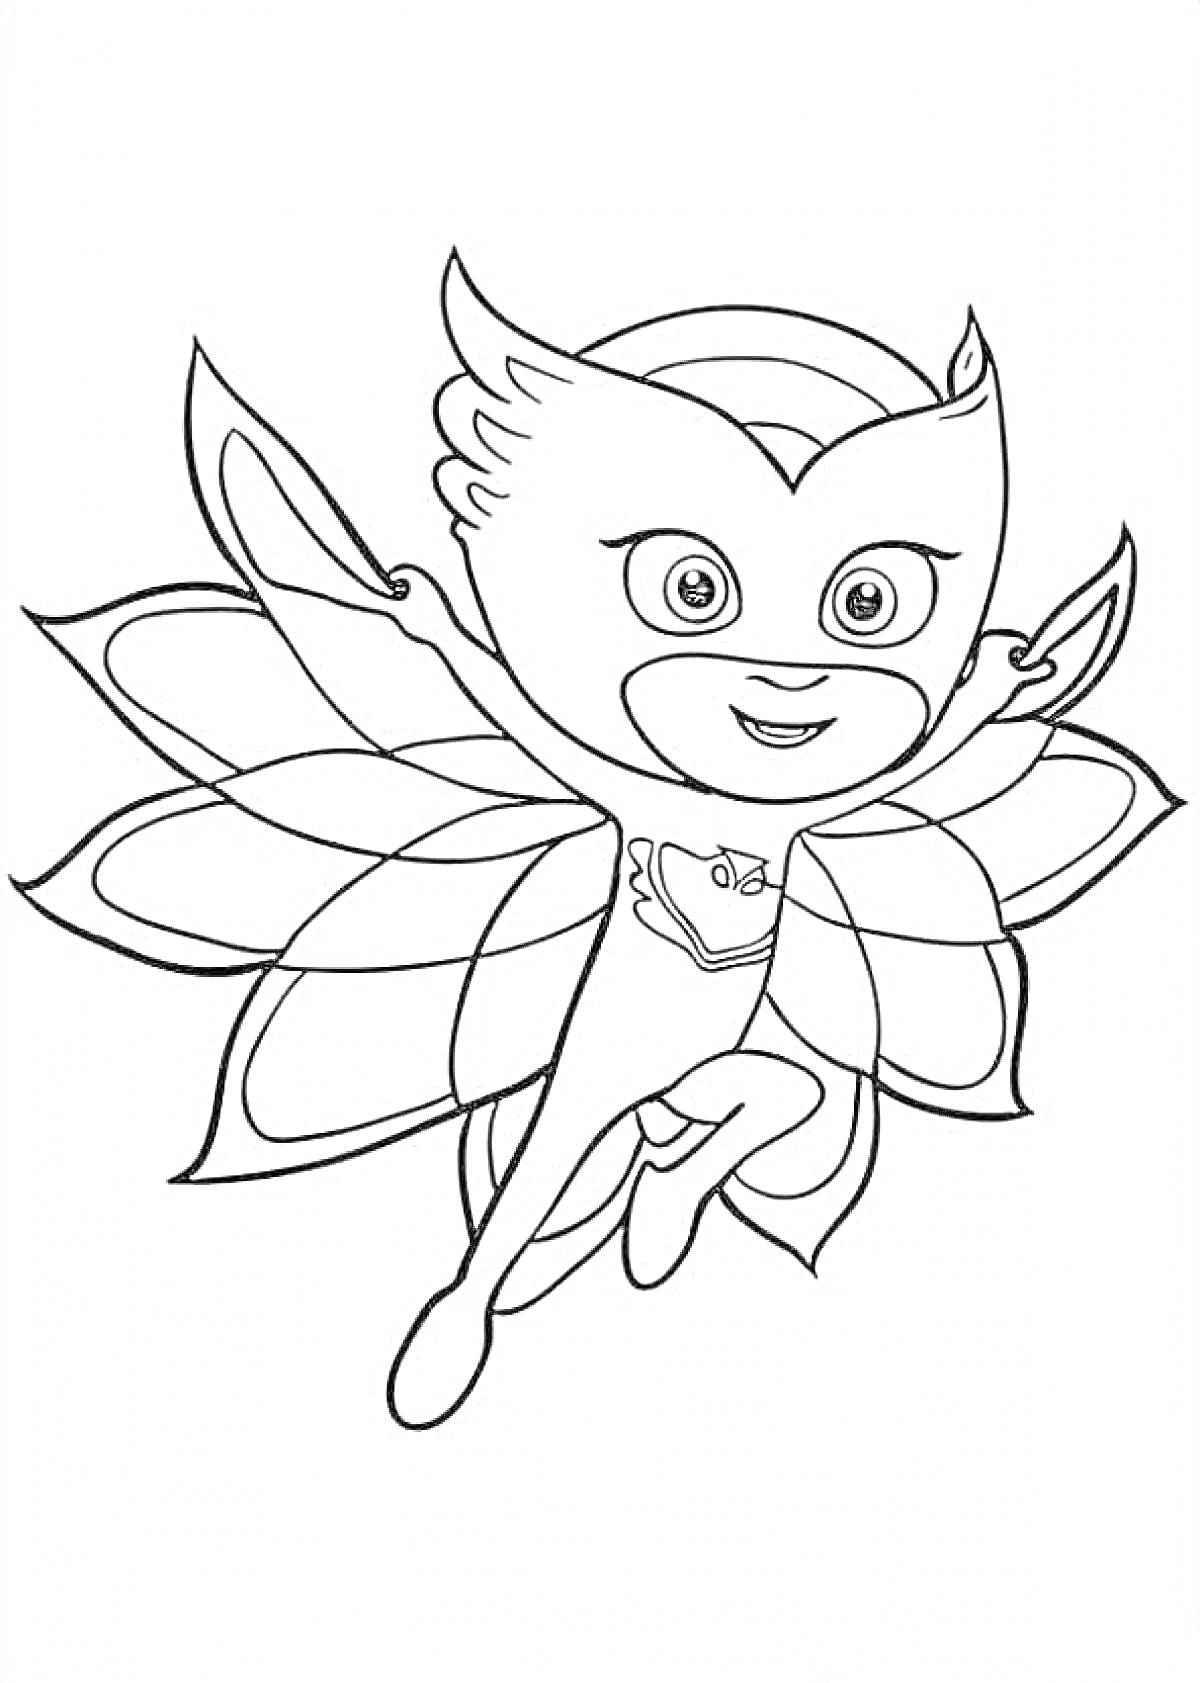 Раскраска Герой в маске с крыльями бабочки